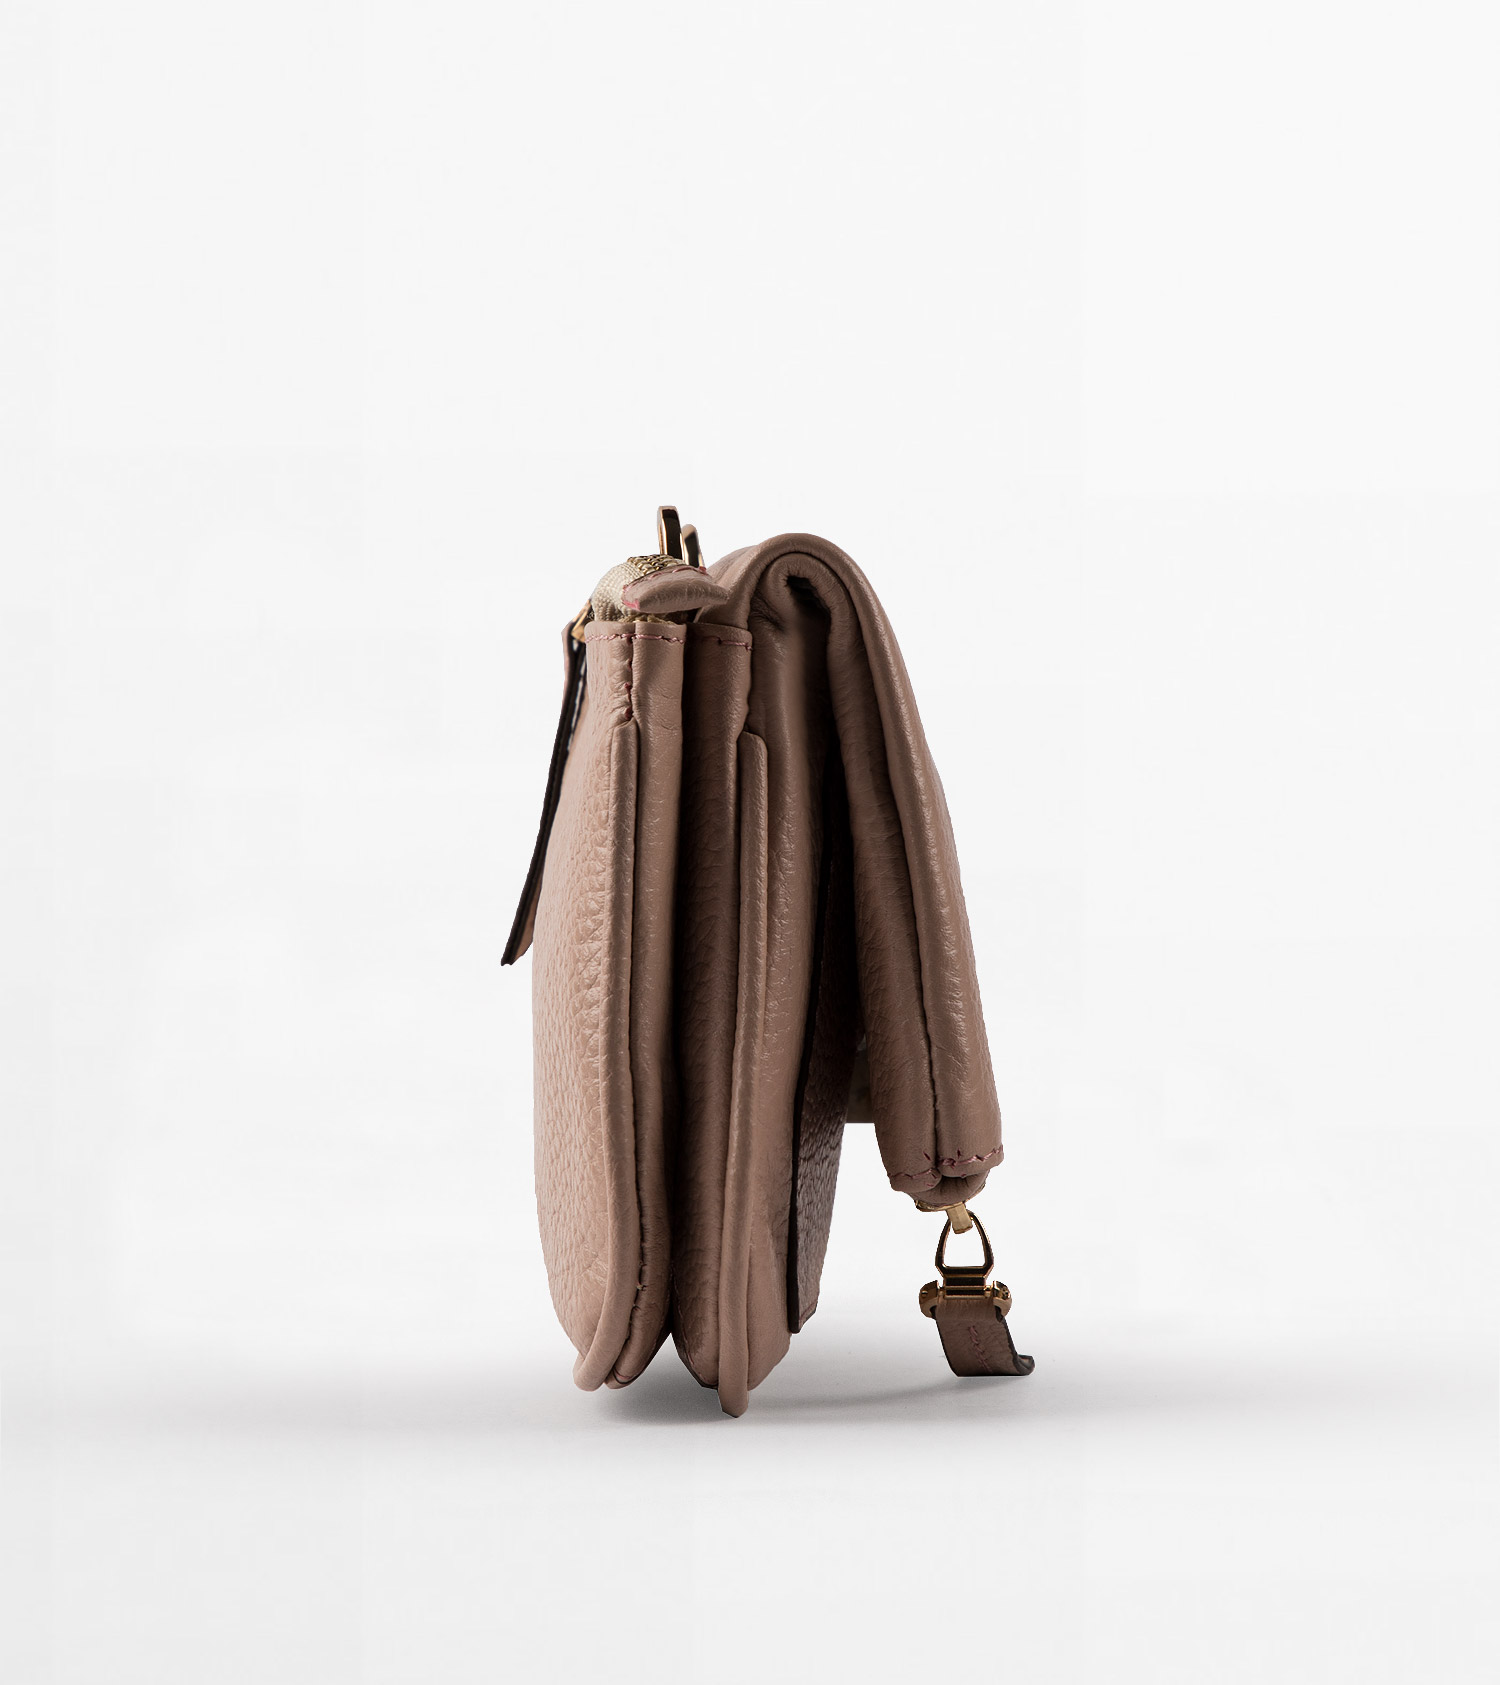 کیف چرم زنانه کد 7177 - تصویر شماره 1